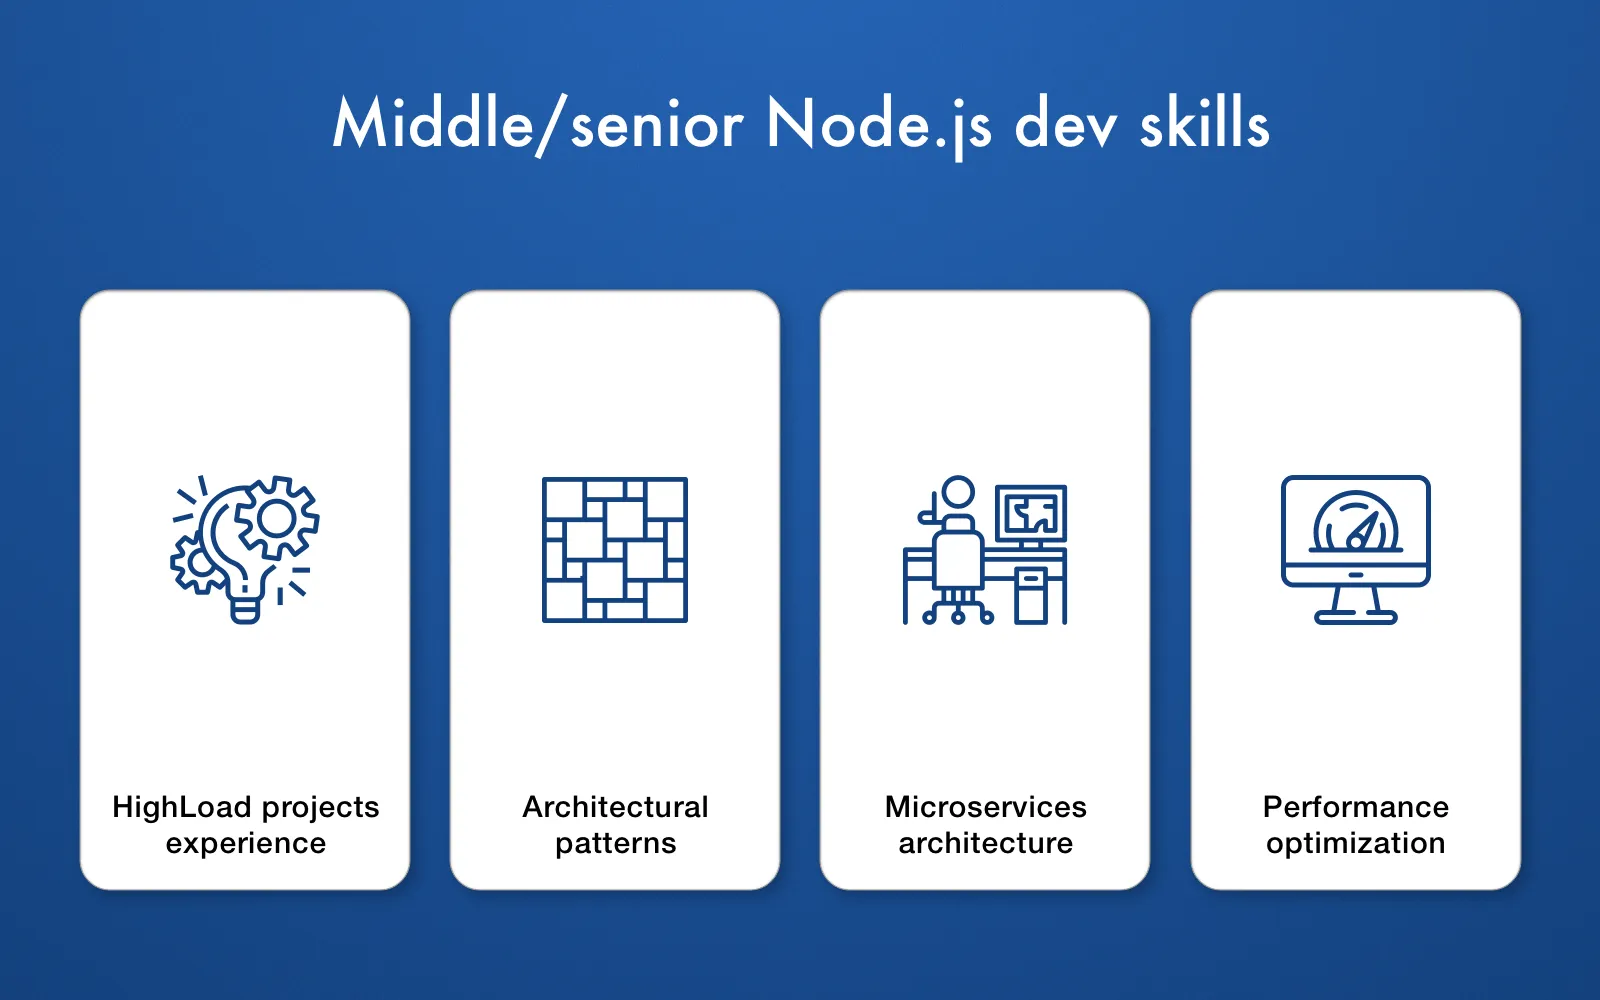 Middle/senior Node.js skills